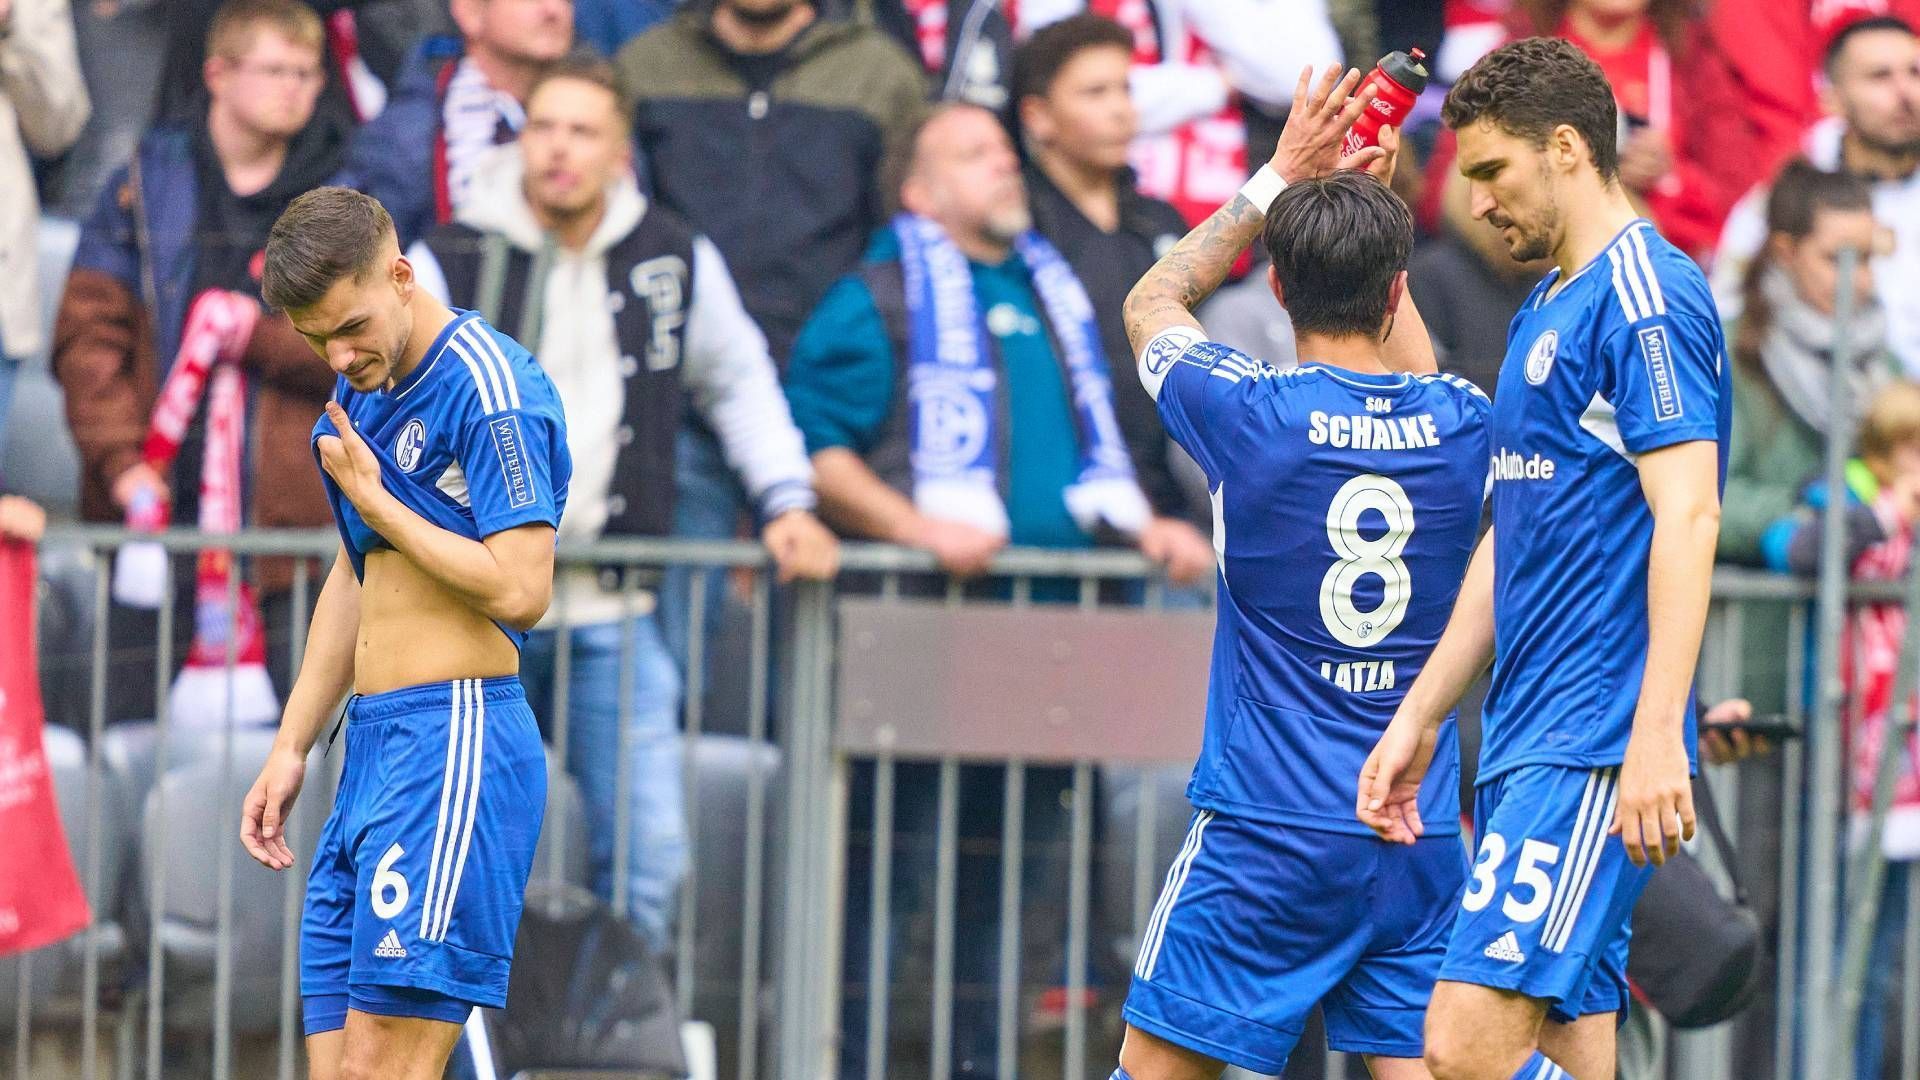 
                <strong>Schalke will die Eintracht schlagen</strong><br>
                Die Schalker wiederum setzen vor ihren gigantischen Fans auf die Heimstärke und wollen die Frankfurter Eintracht besiegen. Nach dem 0:6 in München vor einer Woche ist auch für die Königsblauen ein Sieg enorm wichtig.
              